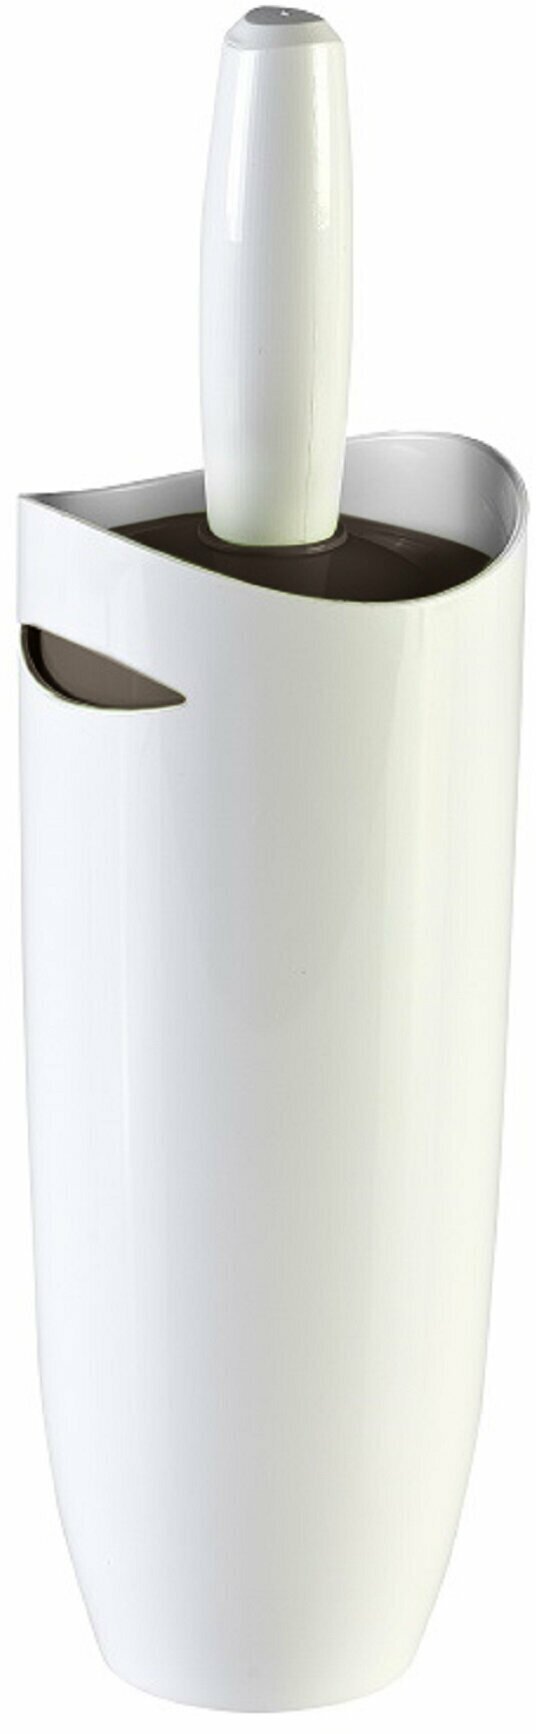 Напольный ершик Primanova M-E05-10 пластиковый с закрытой туалетной щёткой для унитаза цвет бело-коричневый диаметр 10 см высота 35 см